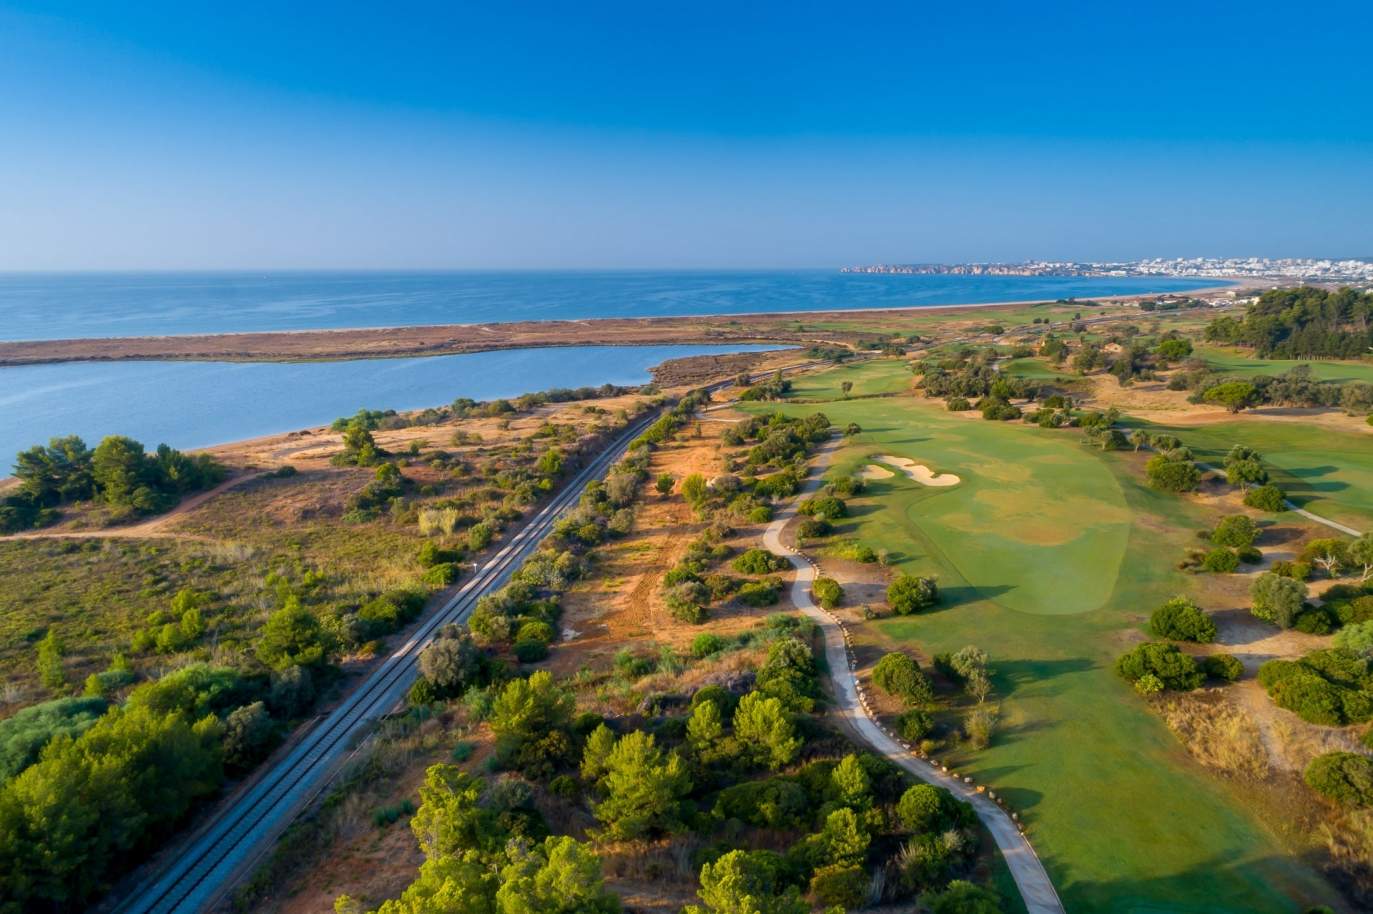 Terrain à vendre dans un complexe de golf, Lagos, Algarve, Portugal_122916